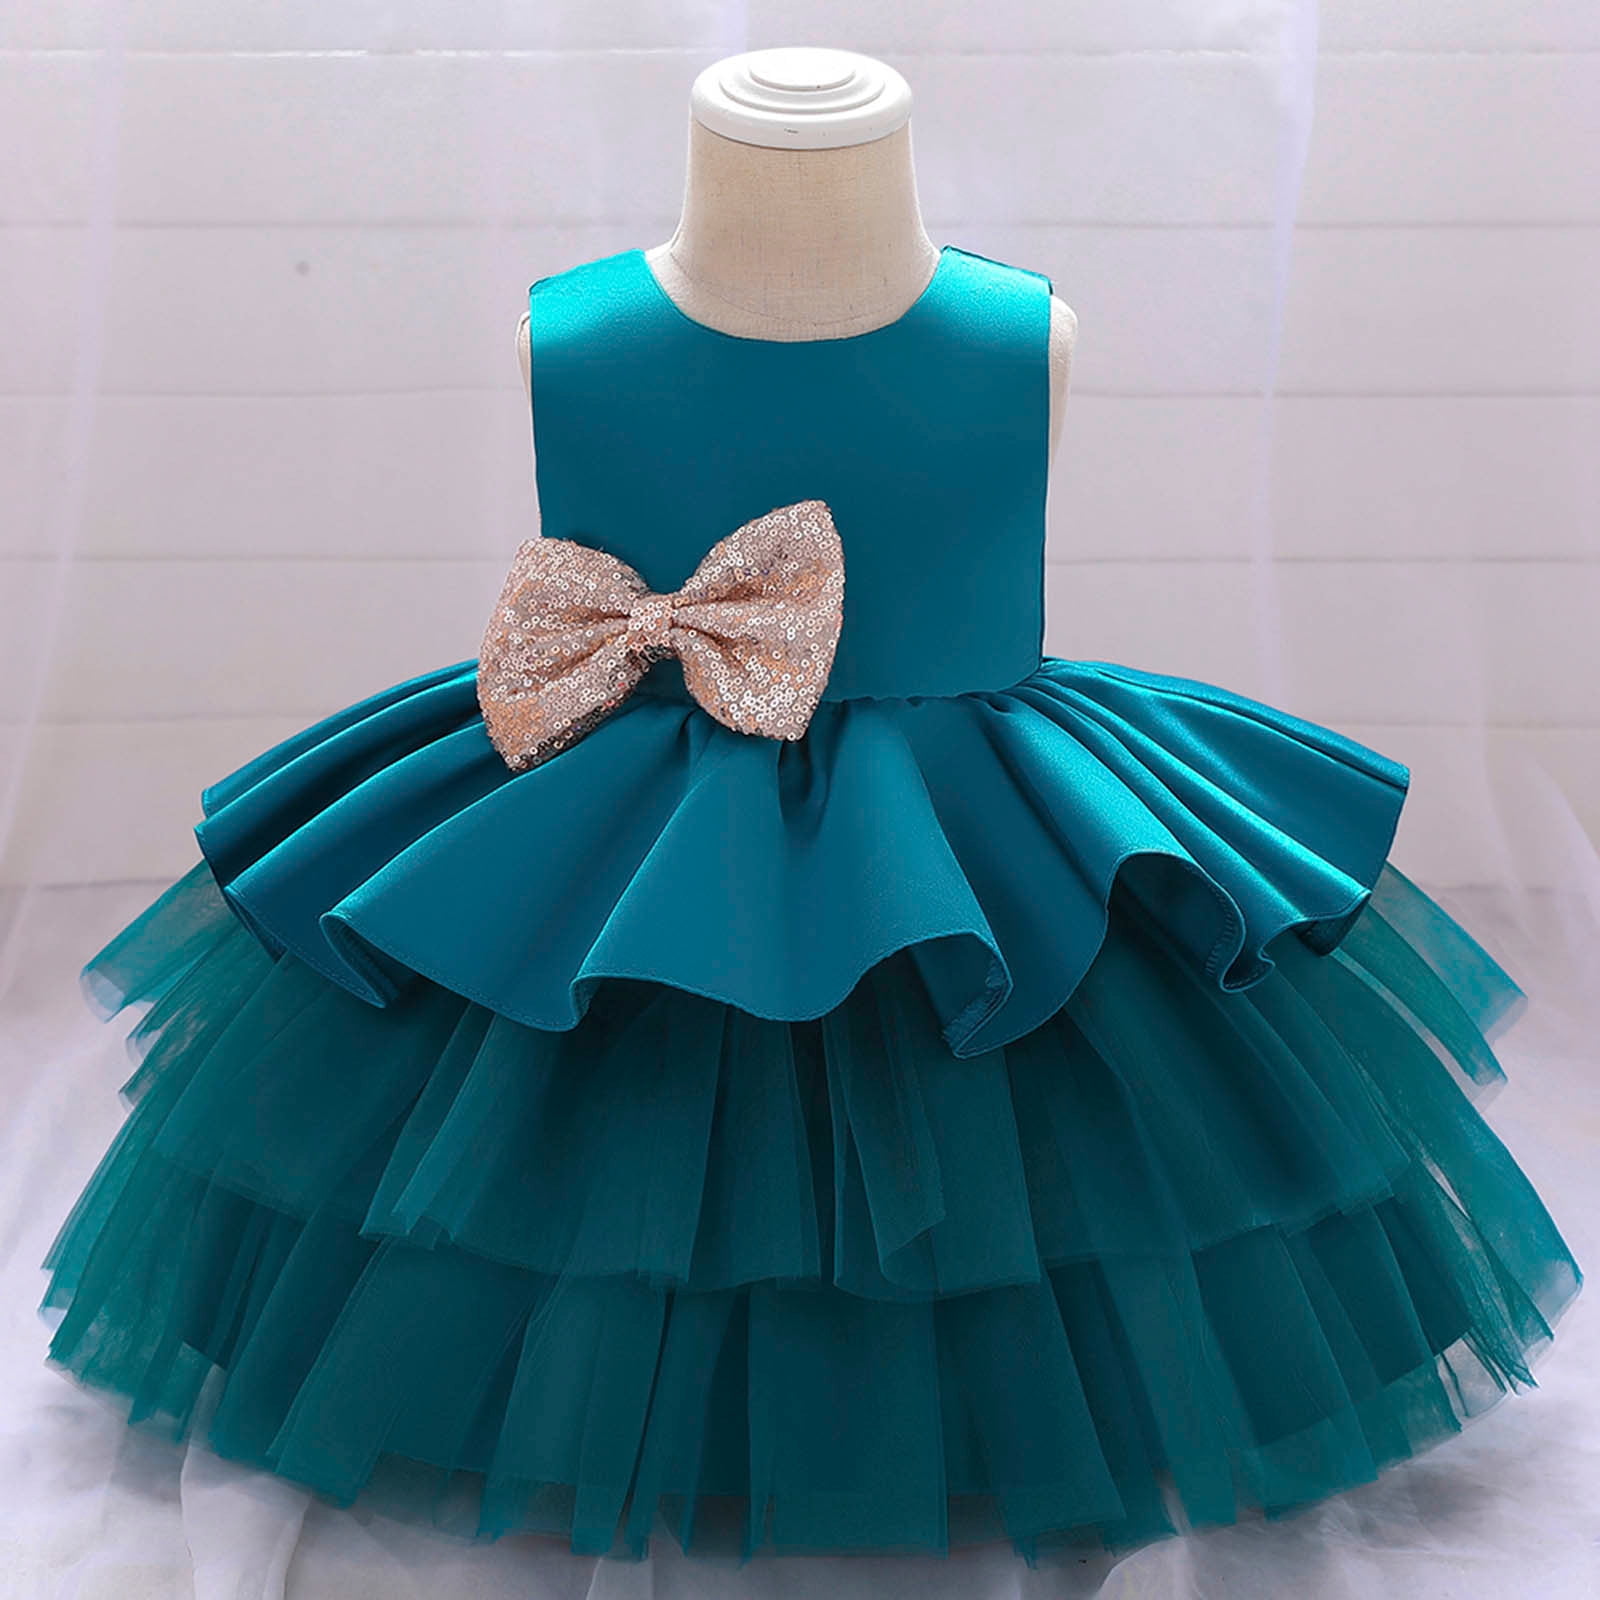 Buy Designer Birthday Dress For Girls